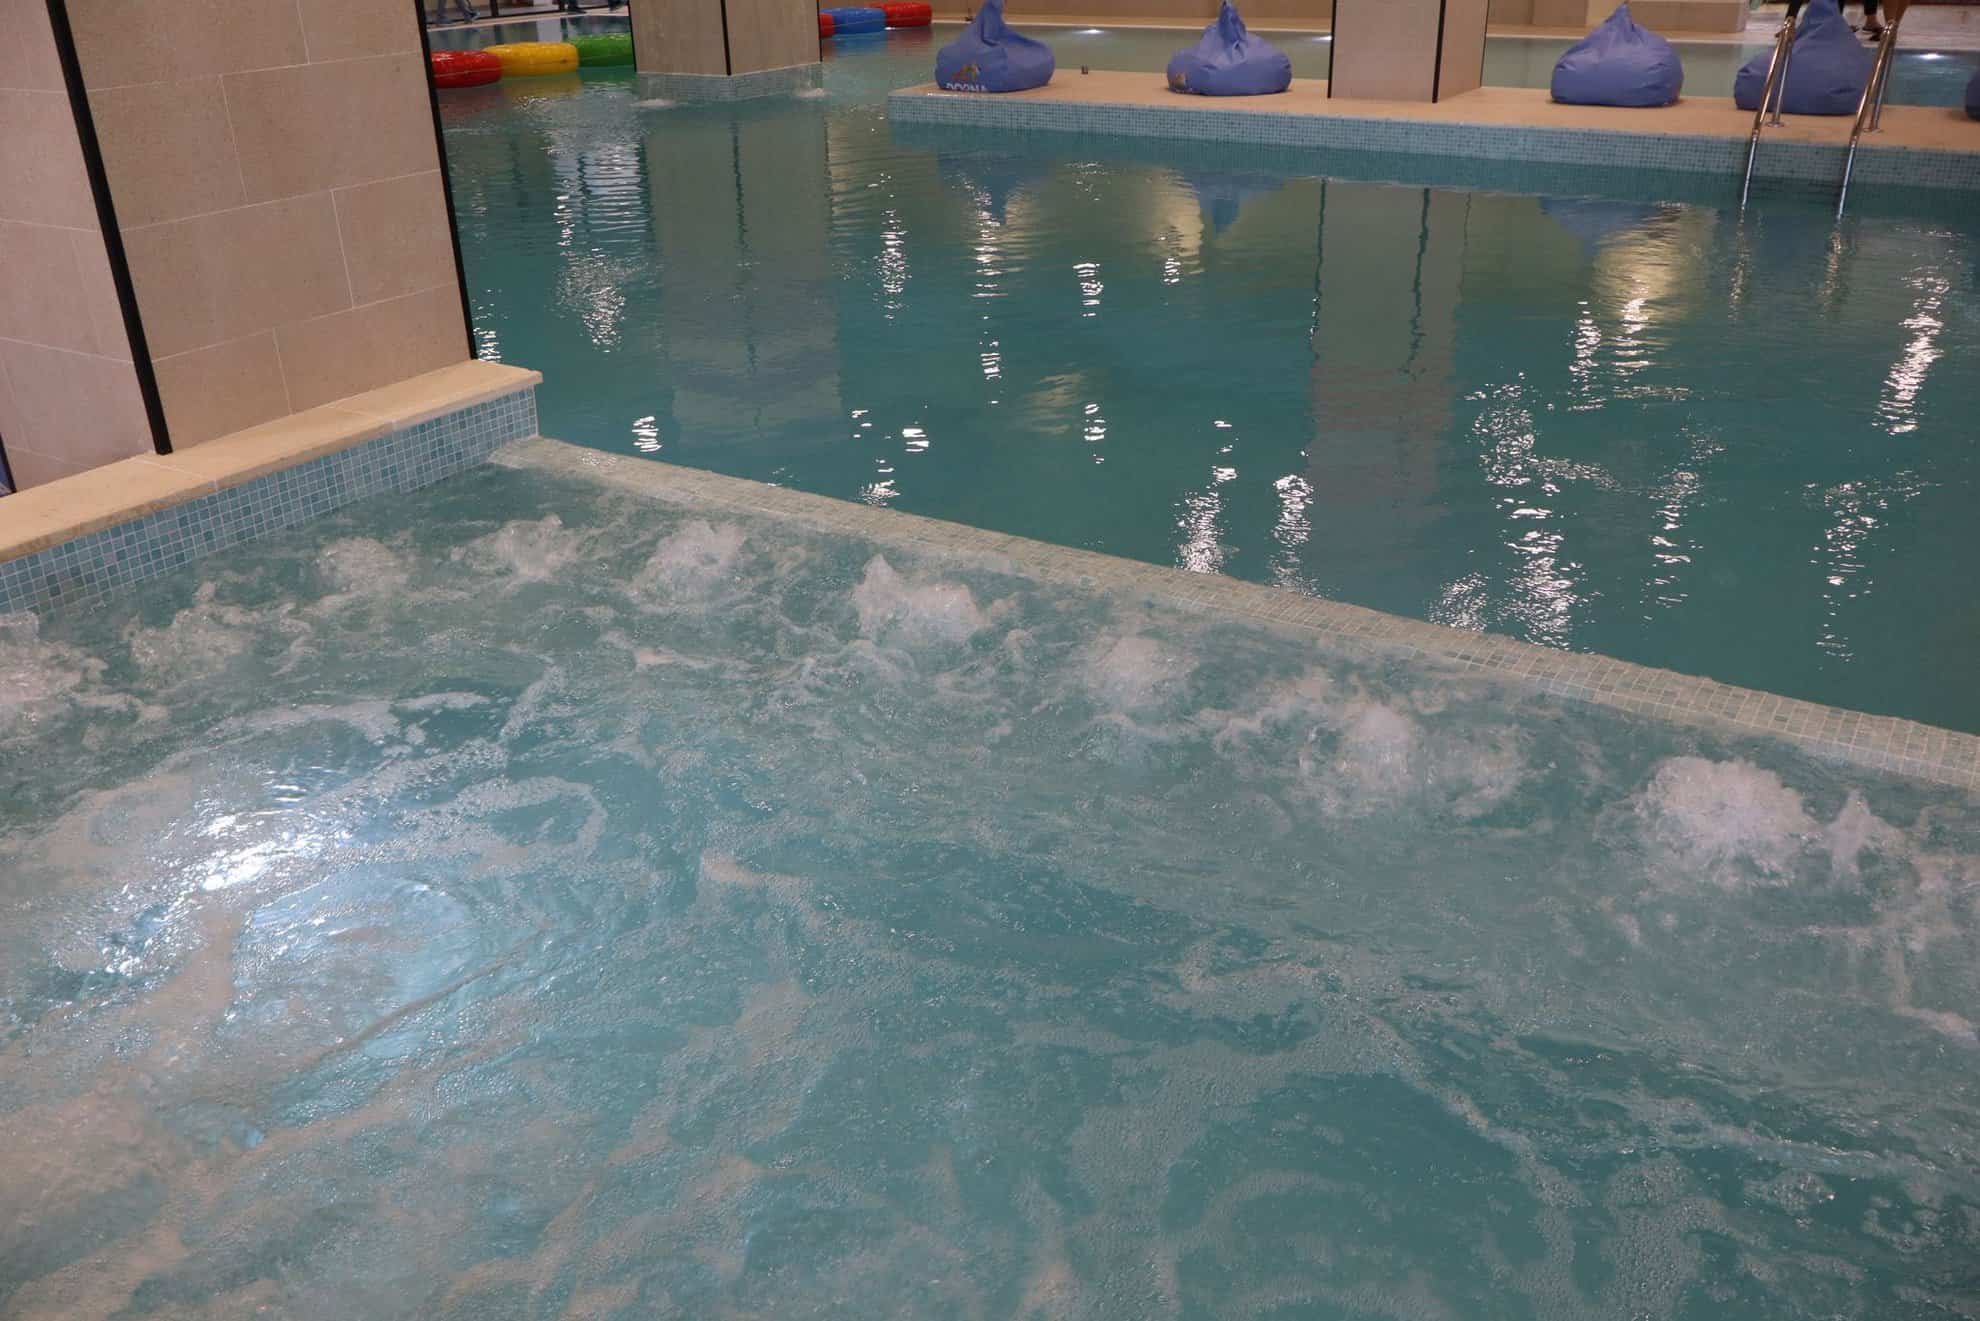 s-a deschis noul aqua park aria sibiu, care include o varietate de piscine, tobogane, zone de relaxare și facilități pentru toate vârstele (foto)